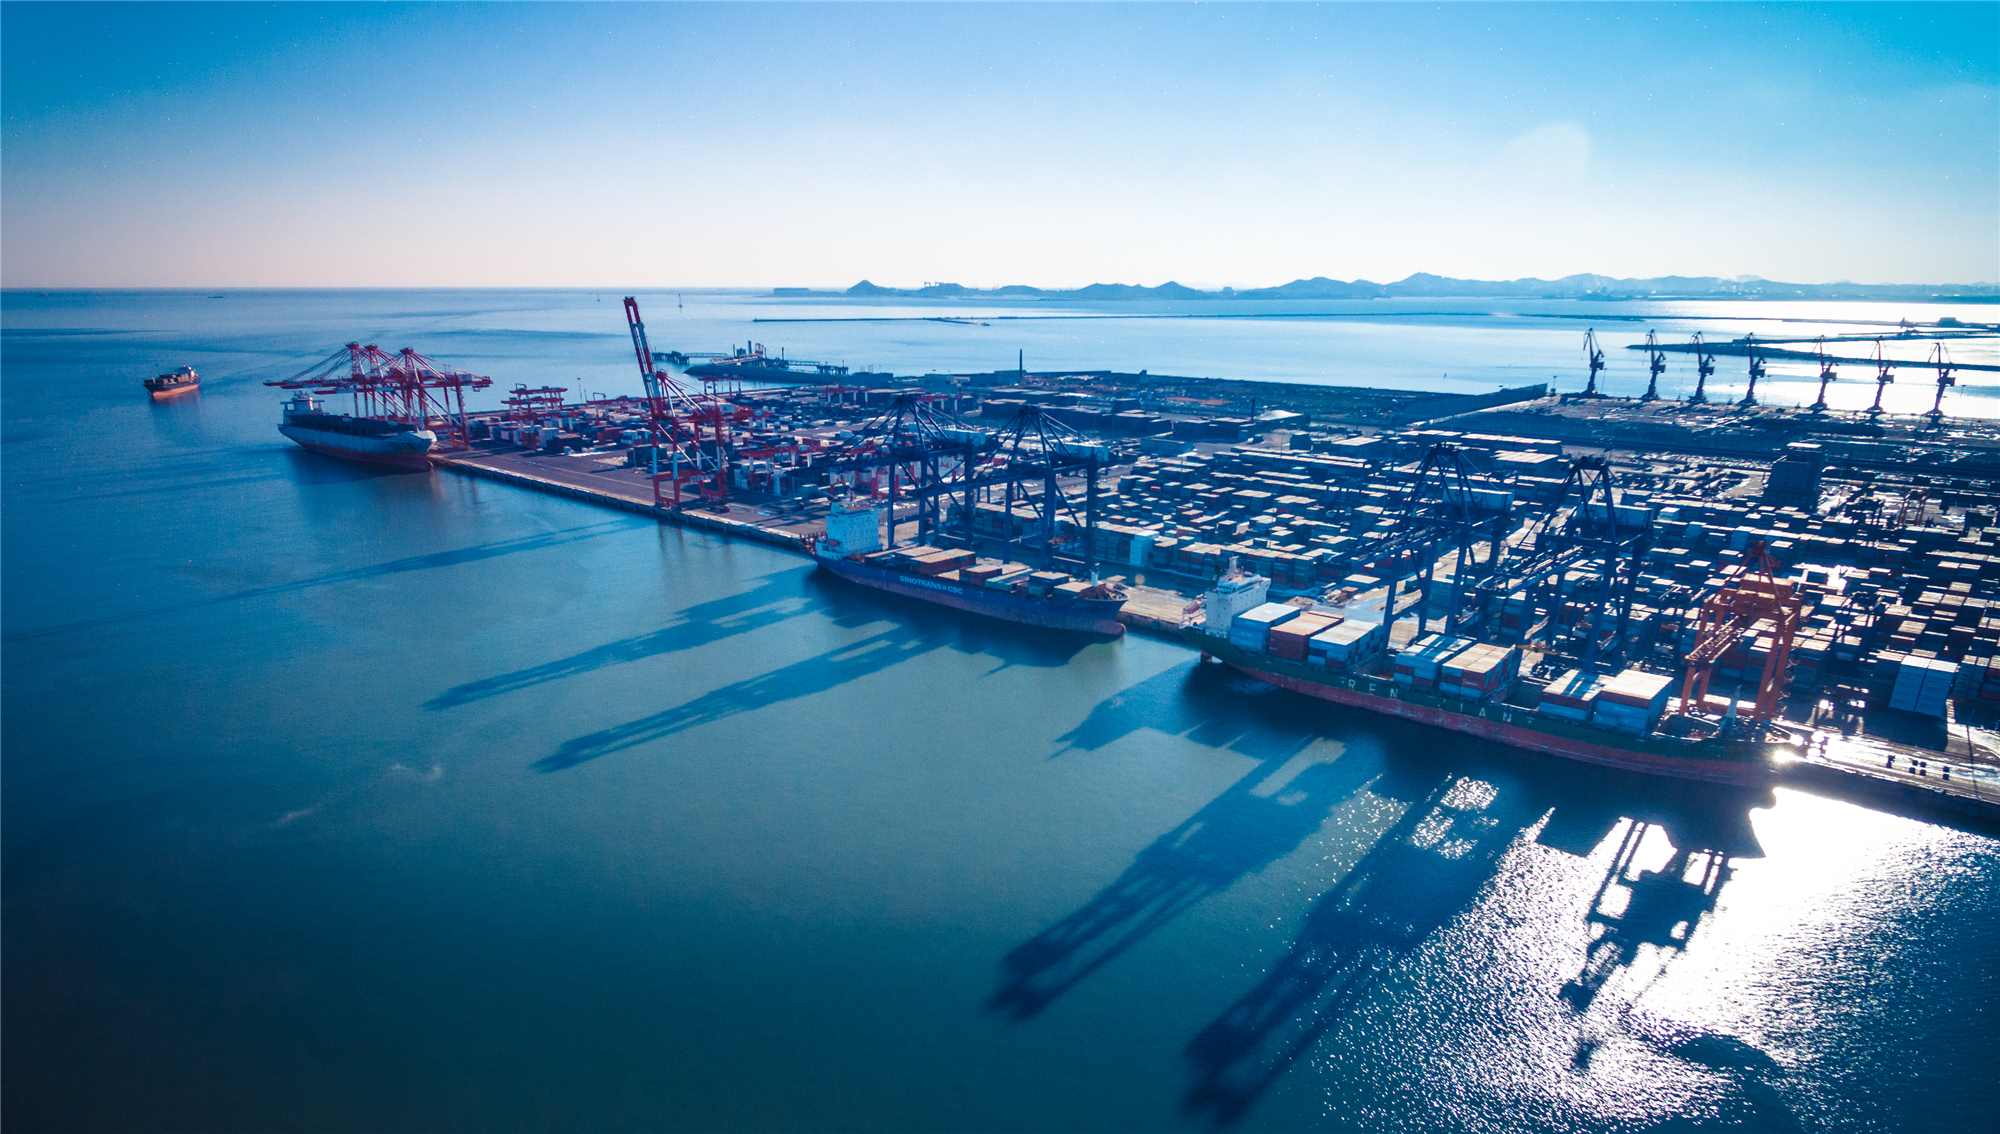 锦州港2018年上半年实现营业收入27.45亿元 同比增长31.6%